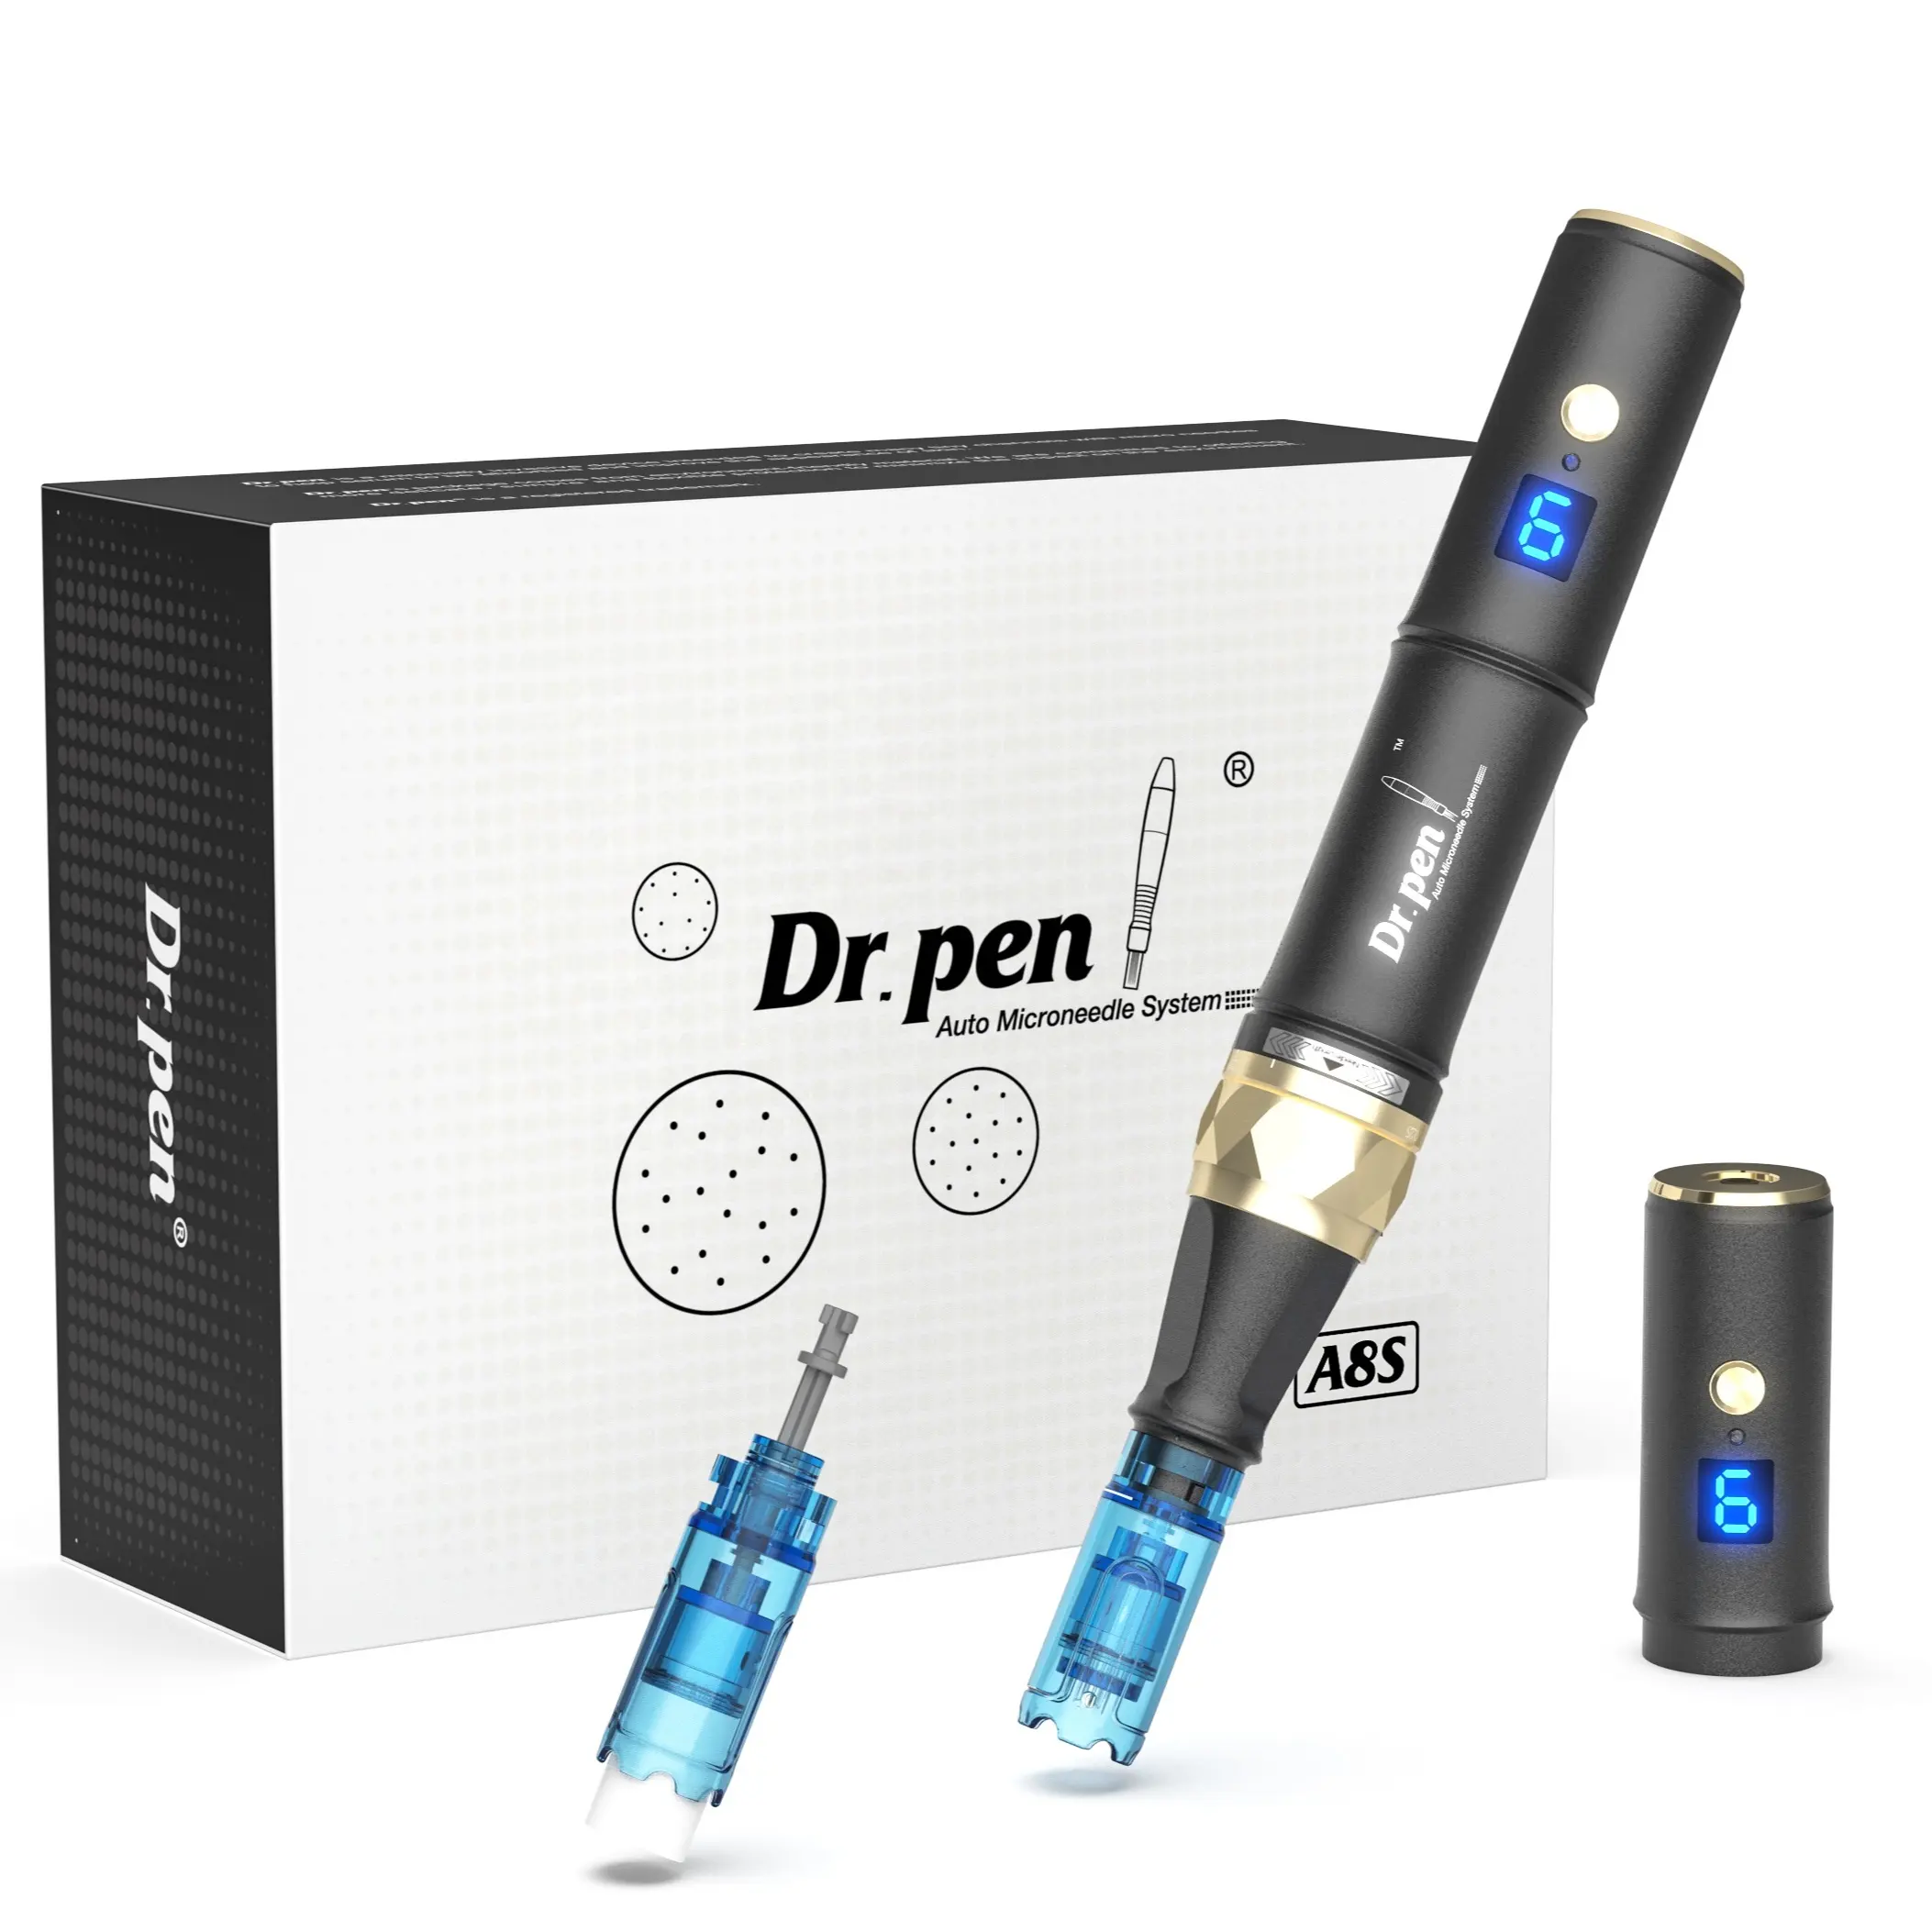 Hot Micron eedling Pen Dr.pen A8S elektrische Schönheits werkzeuge MTS für Gesichts pflege Schönheits gerät